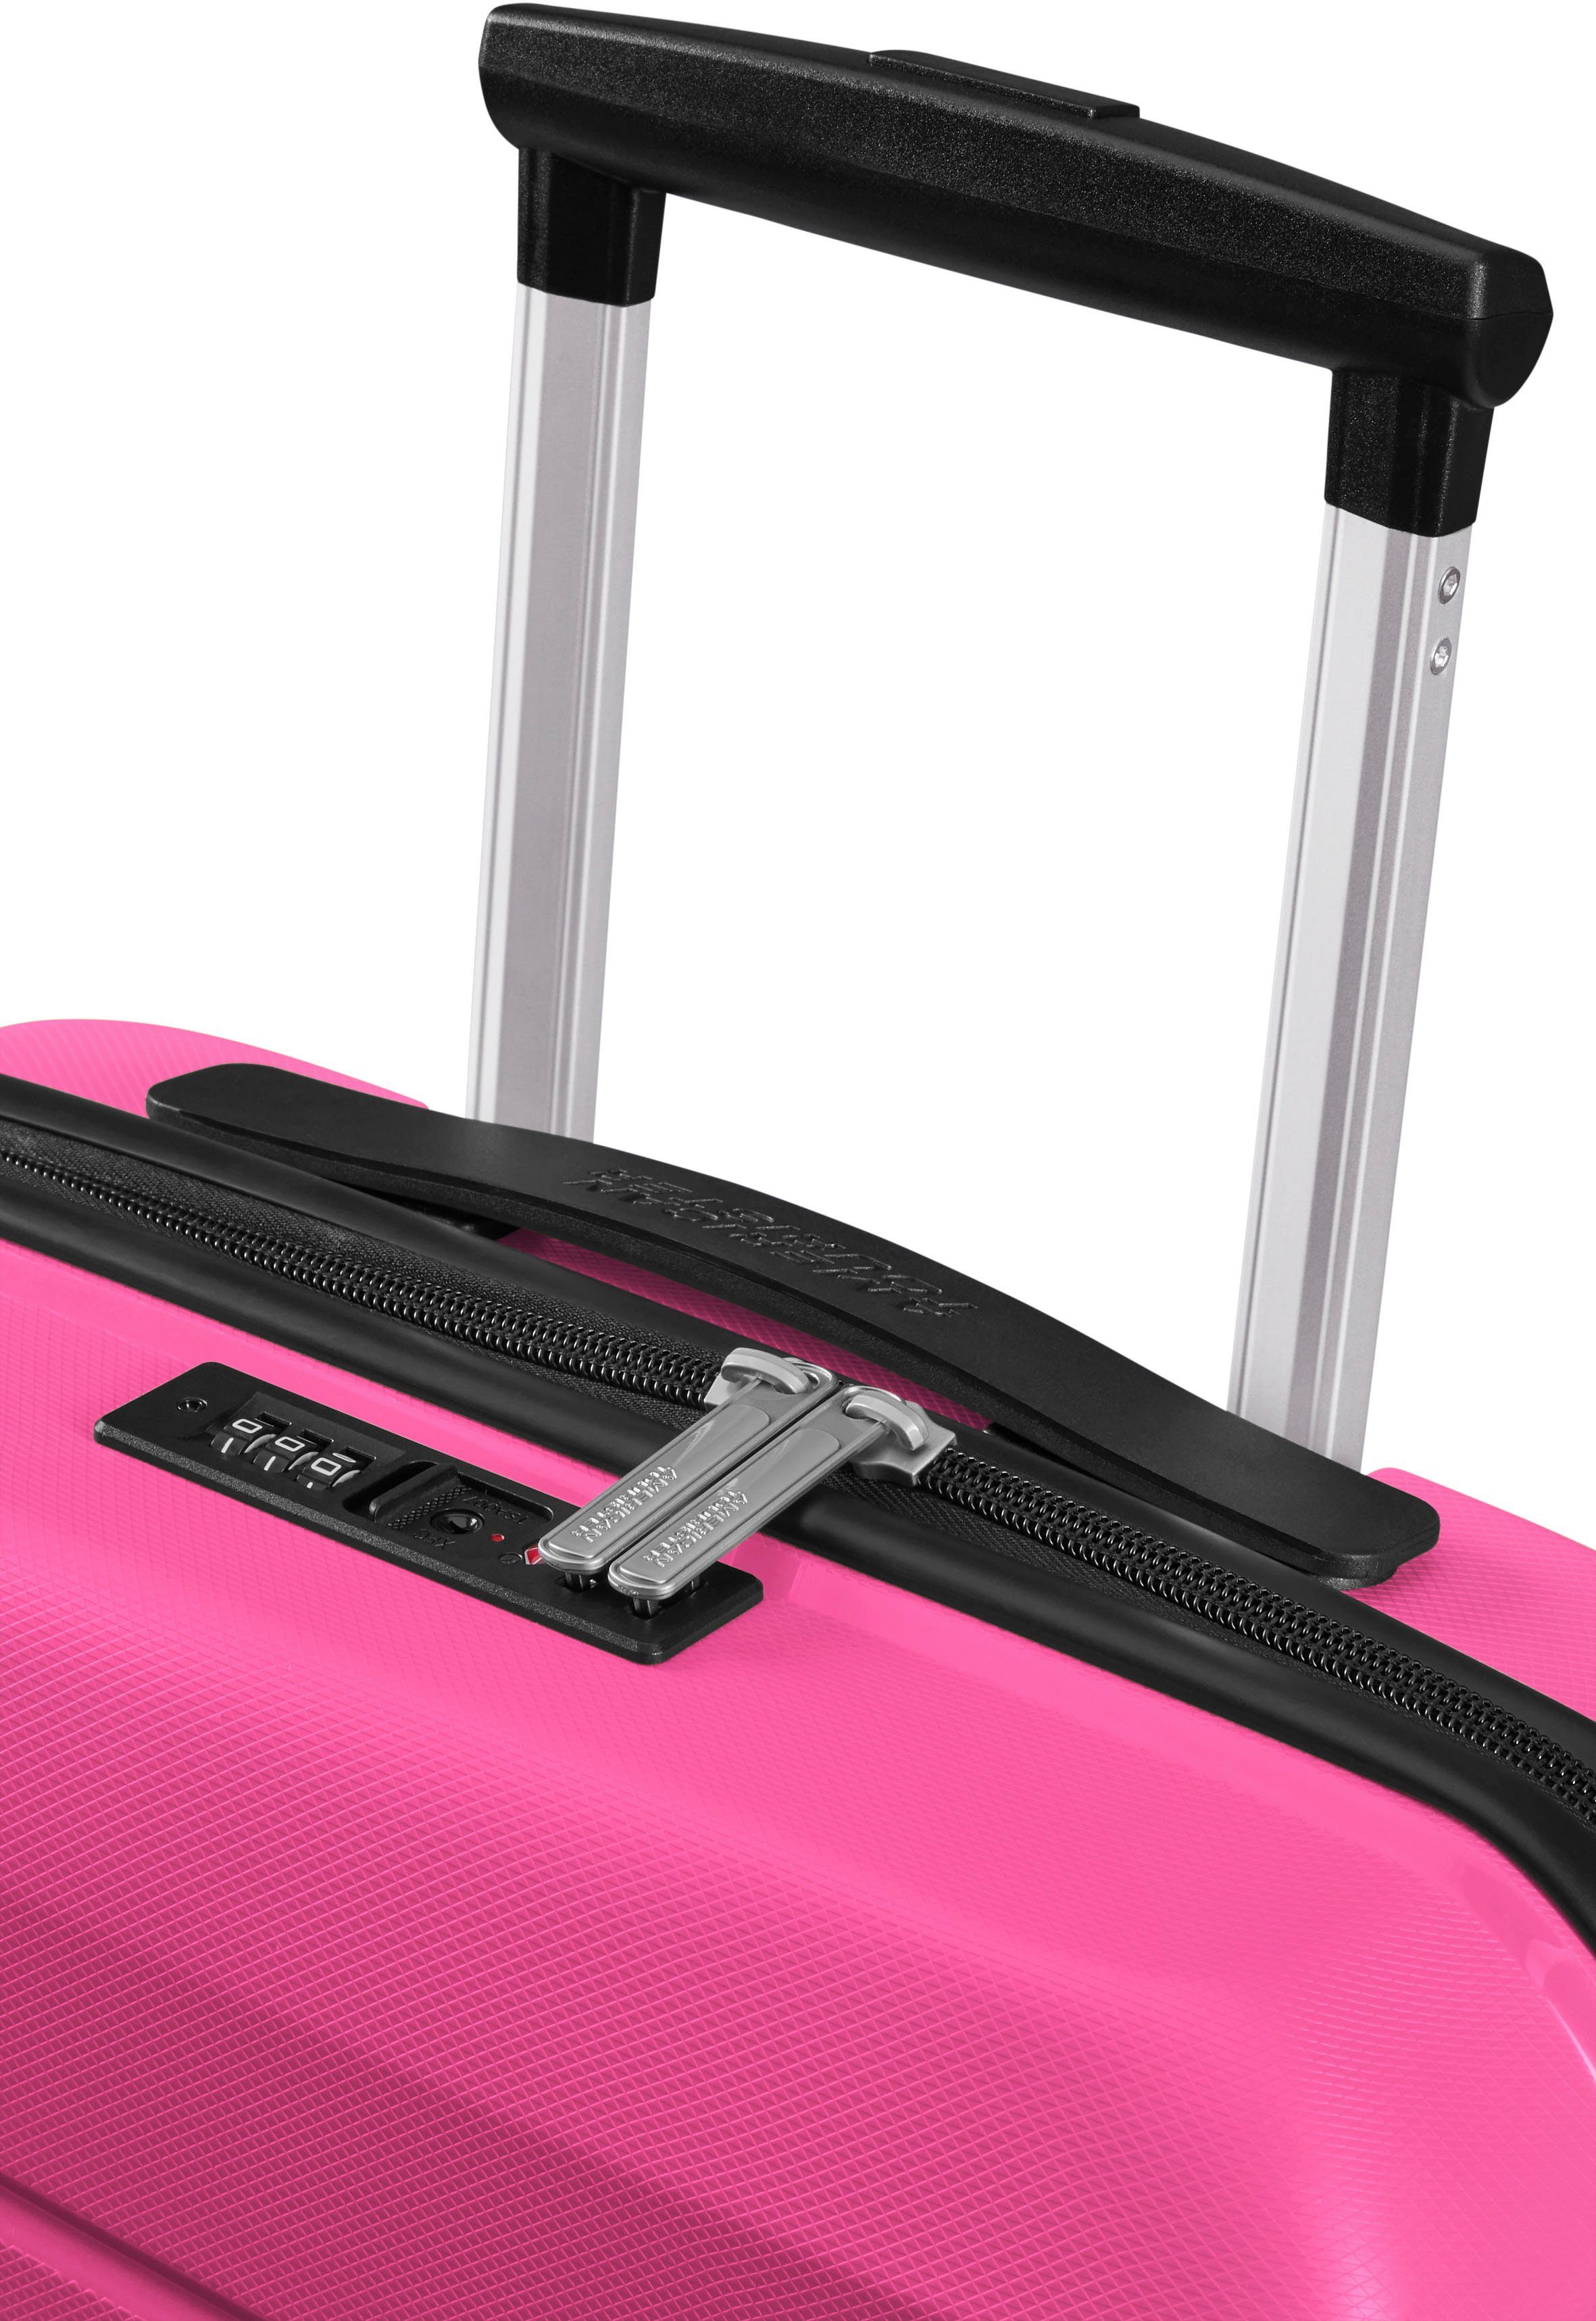 American Tourister® Hartschalen-Trolley Air Move, Peace Pink 55 cm, 4 Rollen